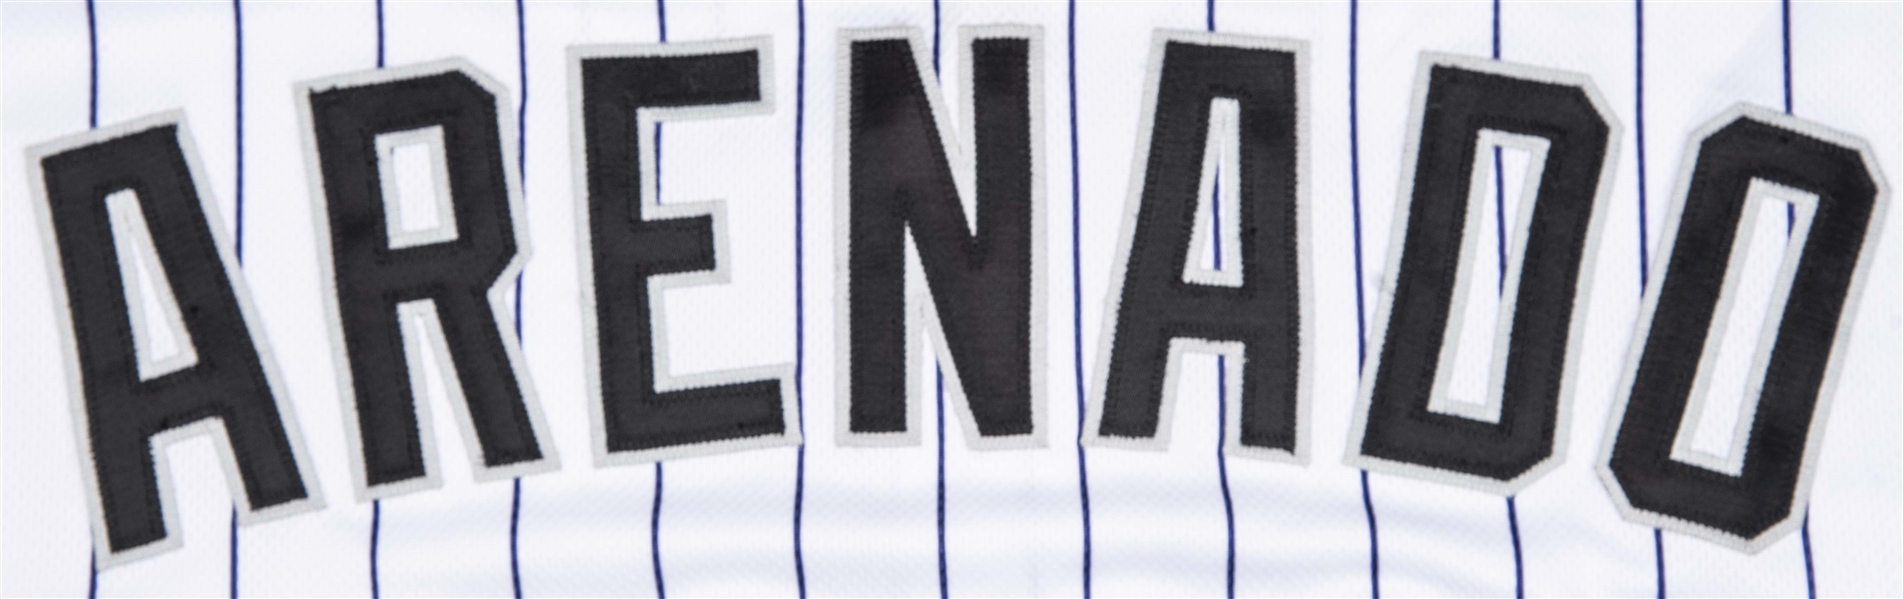 Nolan Arenado Nado Signed MLB All-Star Game Custom Jersey (JSA COA)